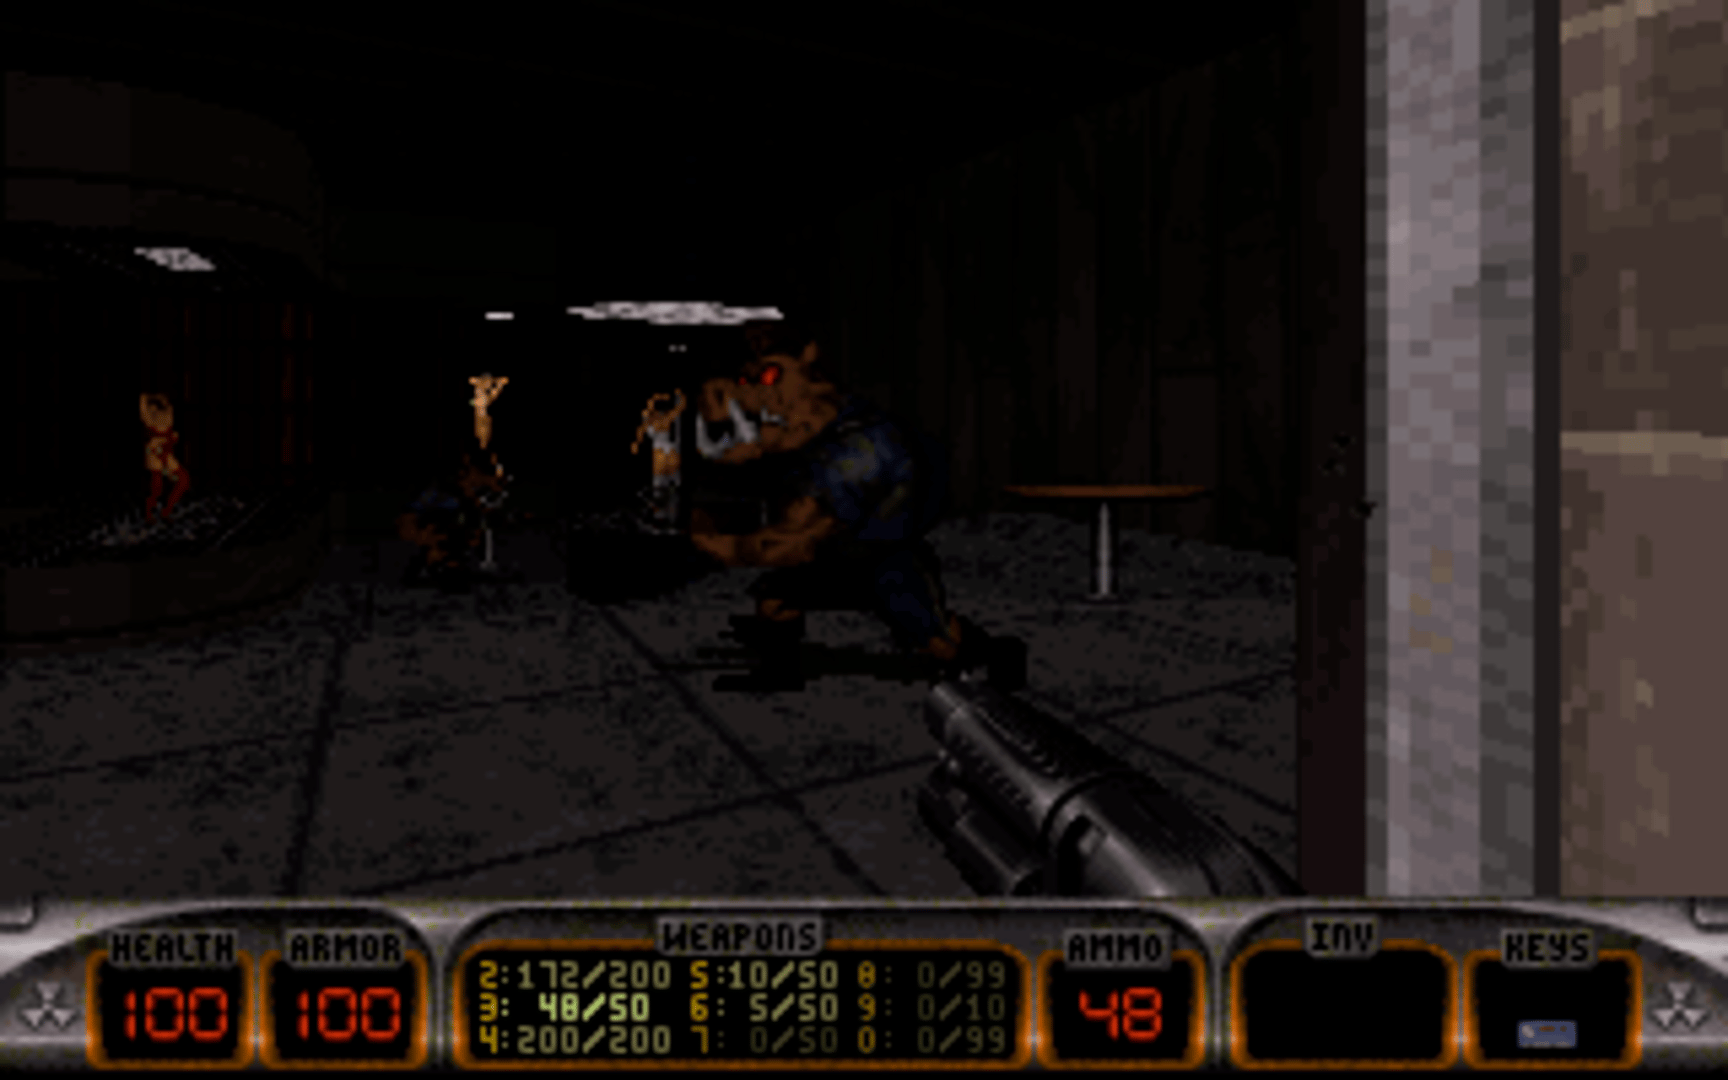 Duke Nukem's Penthouse Paradise screenshot